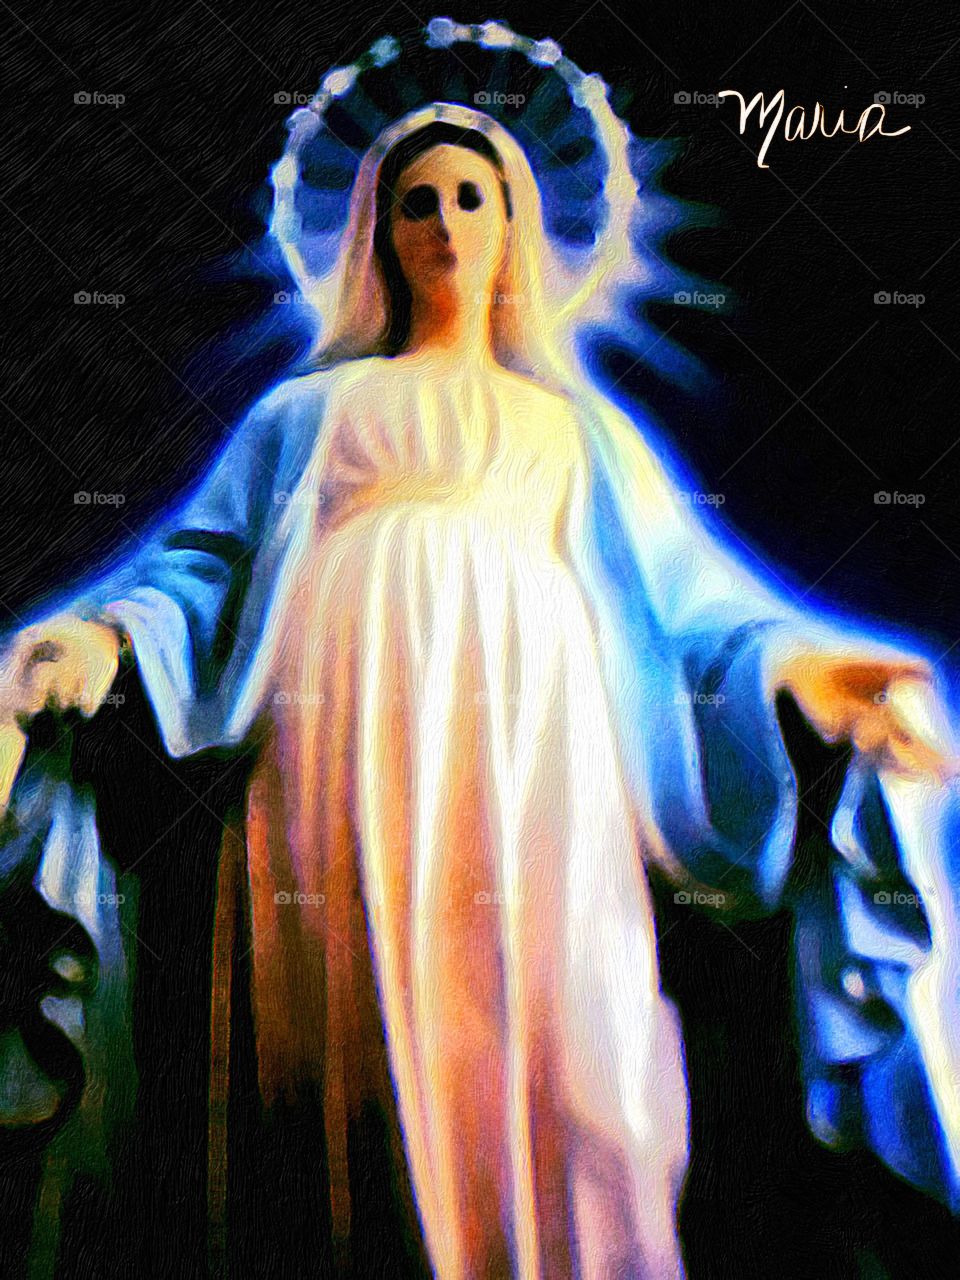 🙏🏻Correndo e Meditando:
"Ó #Maria sem pecado concebida, rogai por nós que recorremos a vós. #Amém."
⛪
#Fé #Santidade #Catolicismo #Jesus #Cristo #MãeDeDeus #NossaSenhora #PorUmMundoDePaz #Peace #Tolerância #Fraternidade